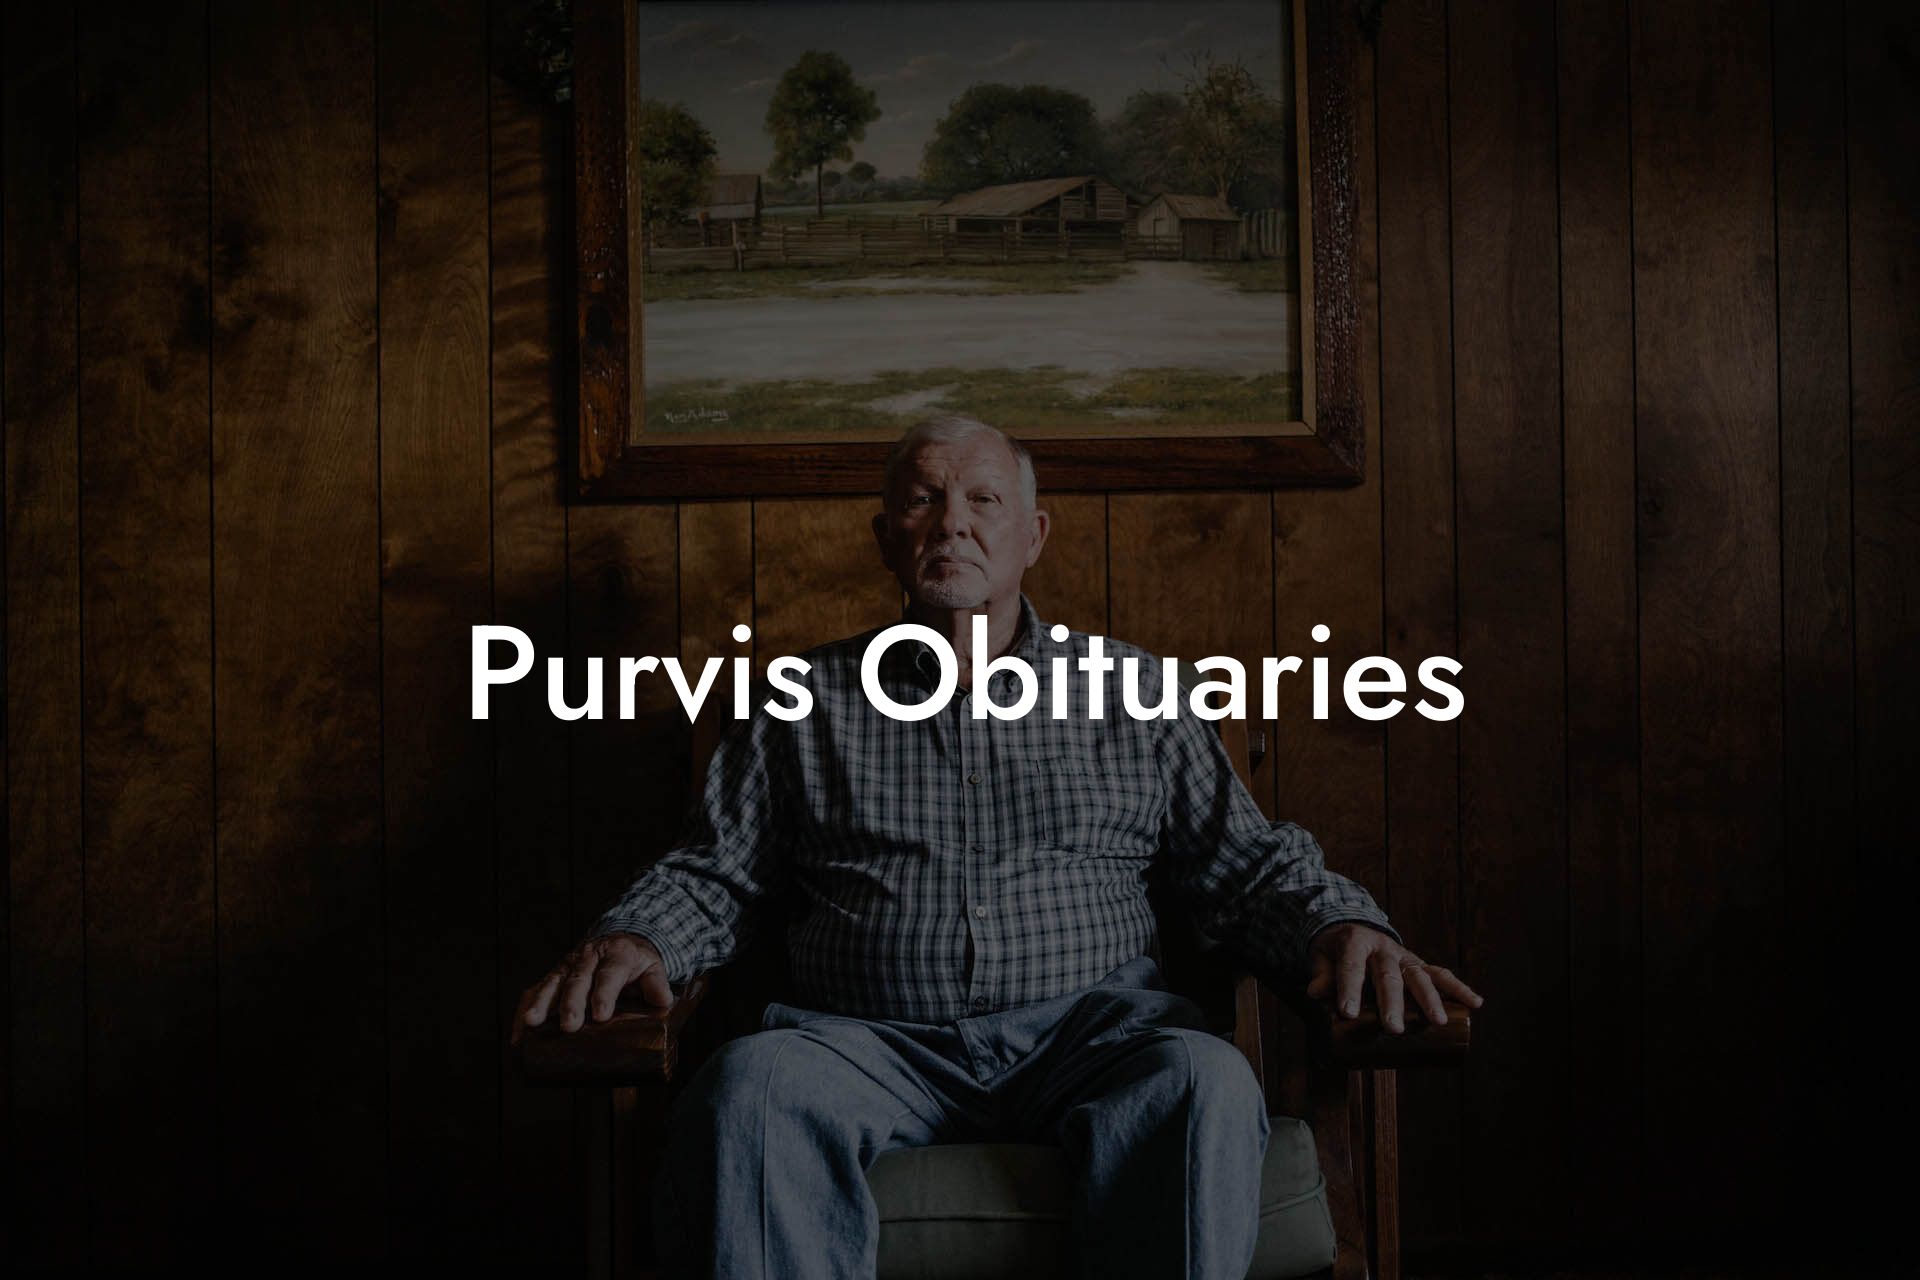 Purvis Obituaries